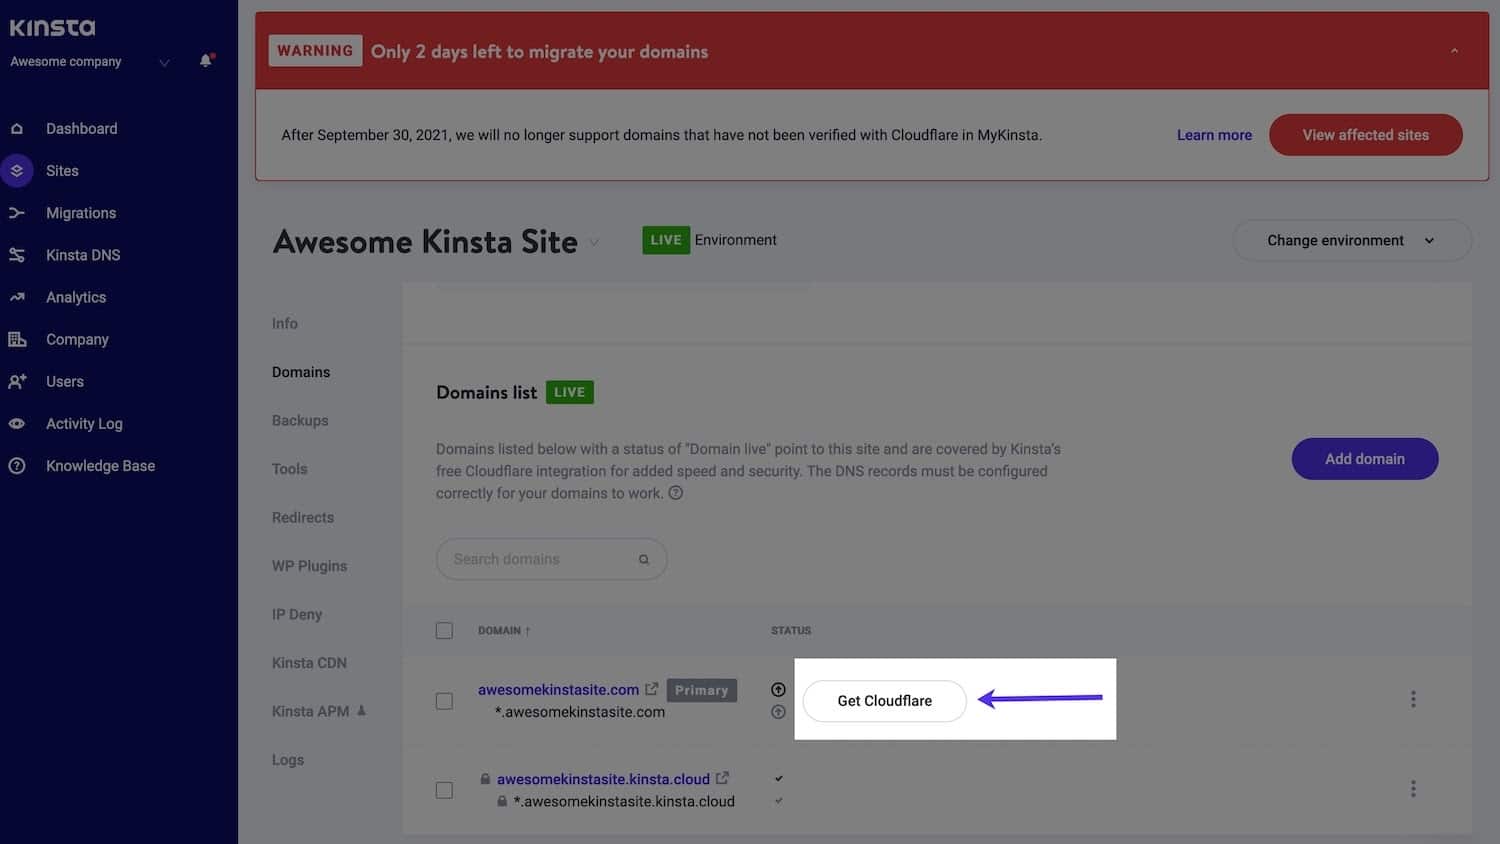 Botón Obtener Cloudflare junto al dominio en la lista de Dominios MyKinsta.